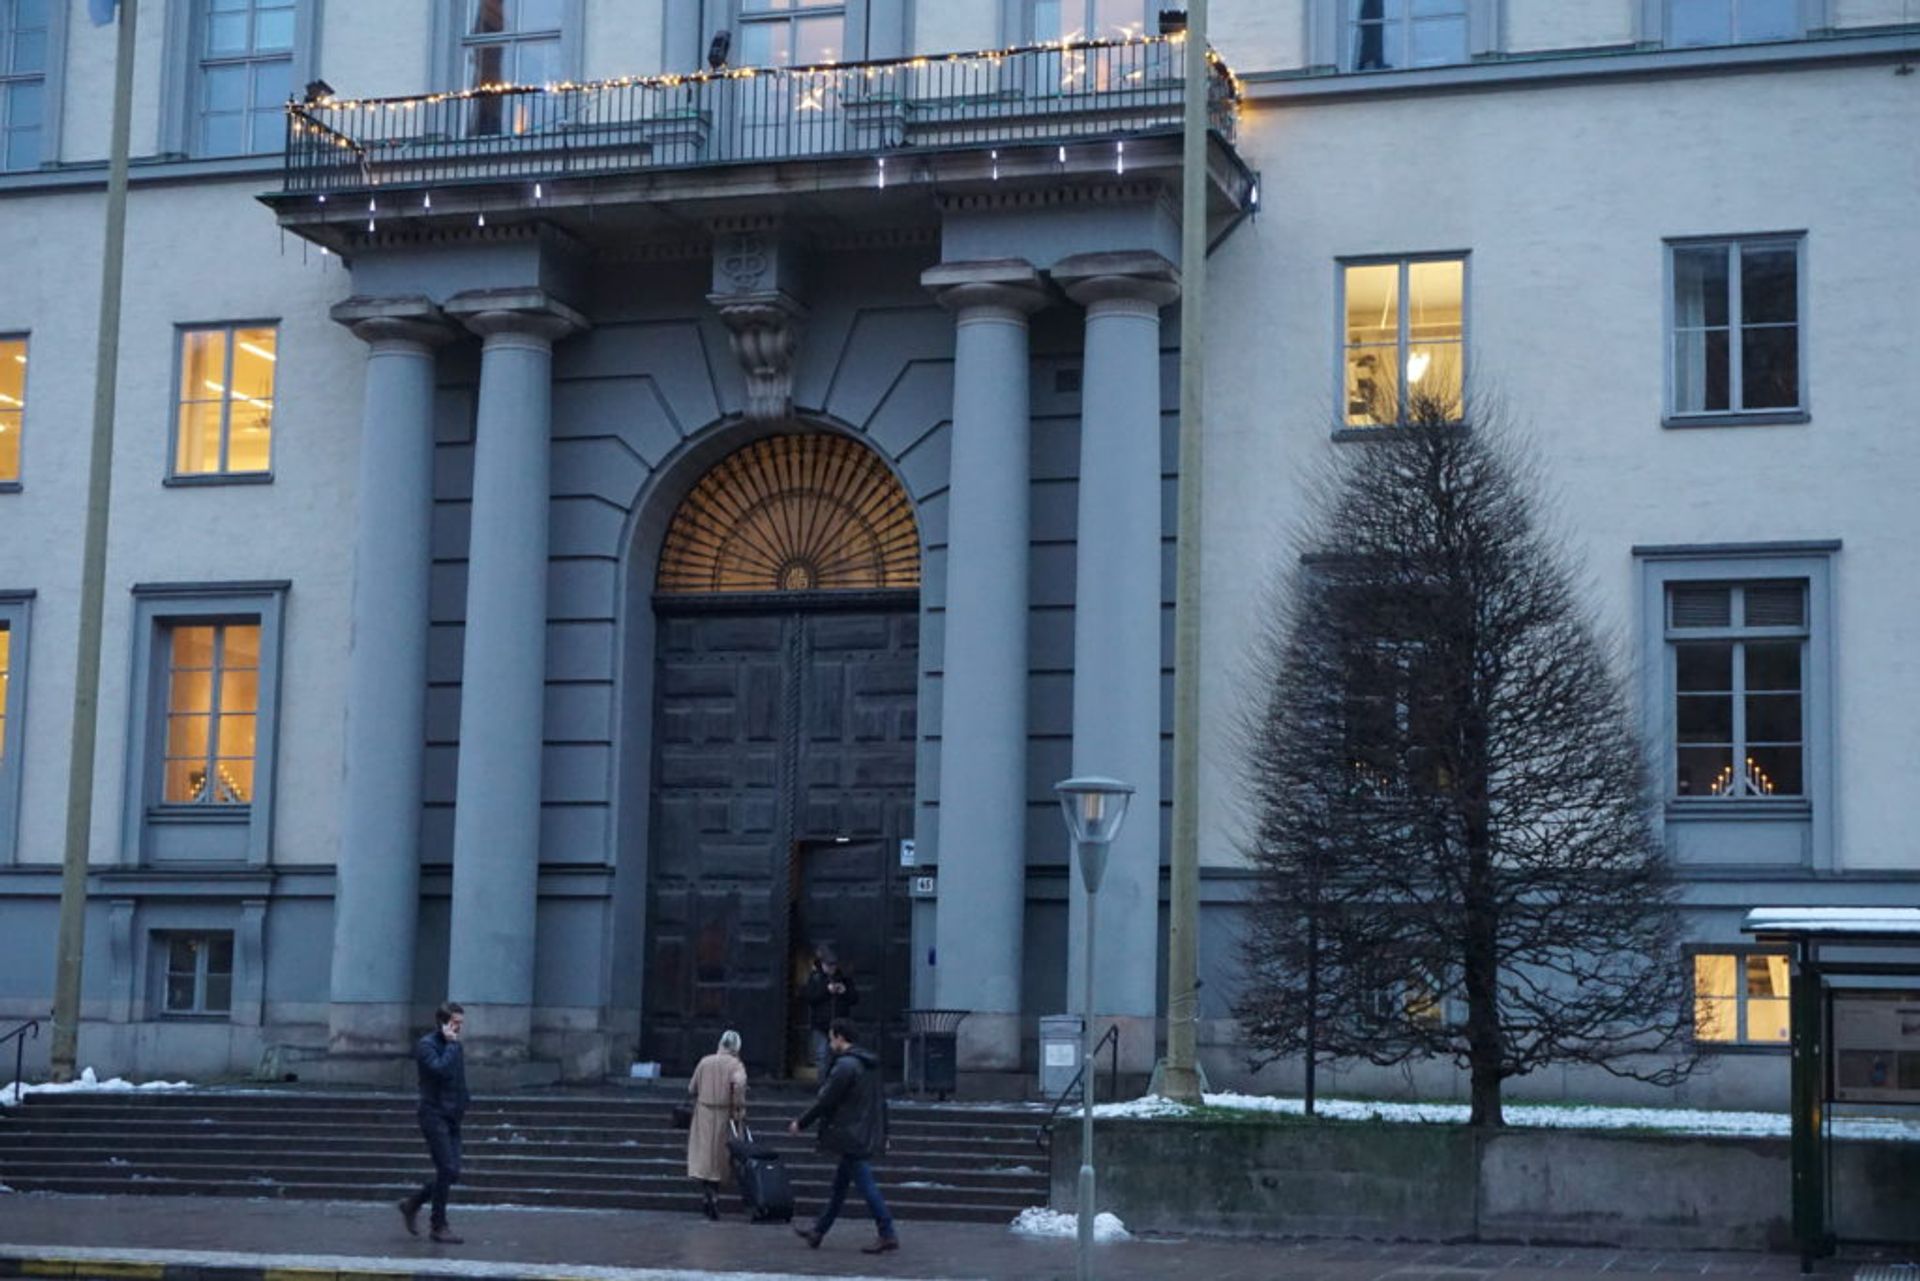 Stockholm School of Economics' Entrance, Source: Inez